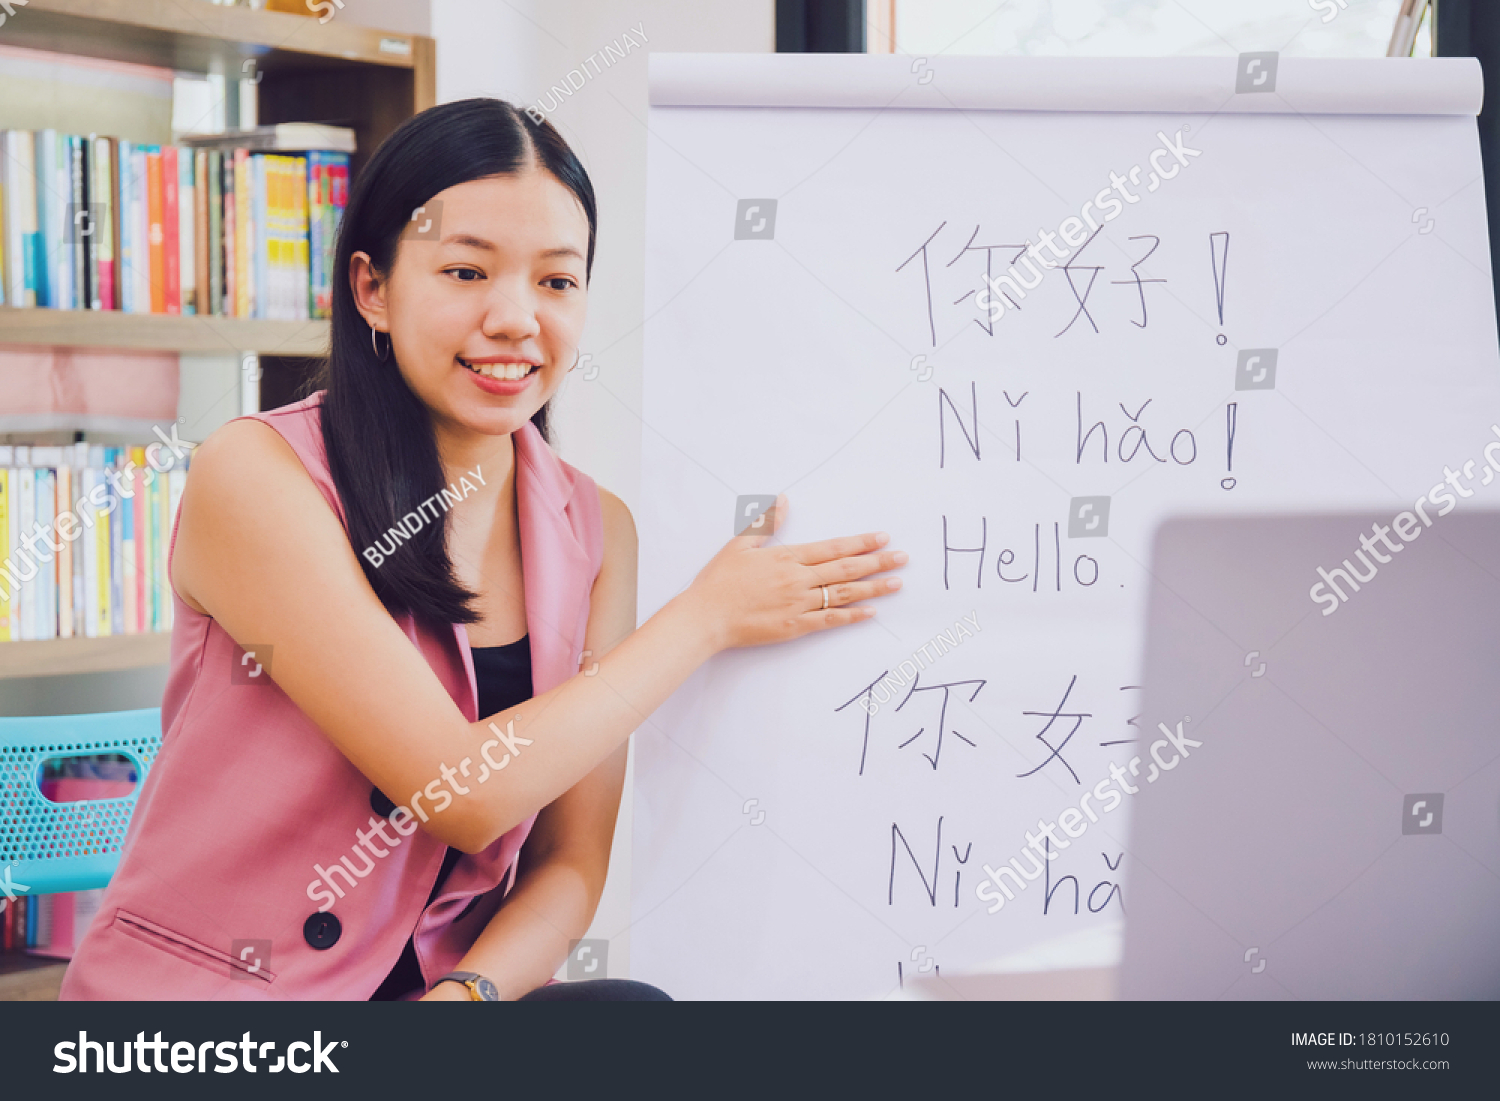 Home schooling перевод. Китайский учитель. Китайский язык. Школа китайского языка. Репетитор по китайскому языку.